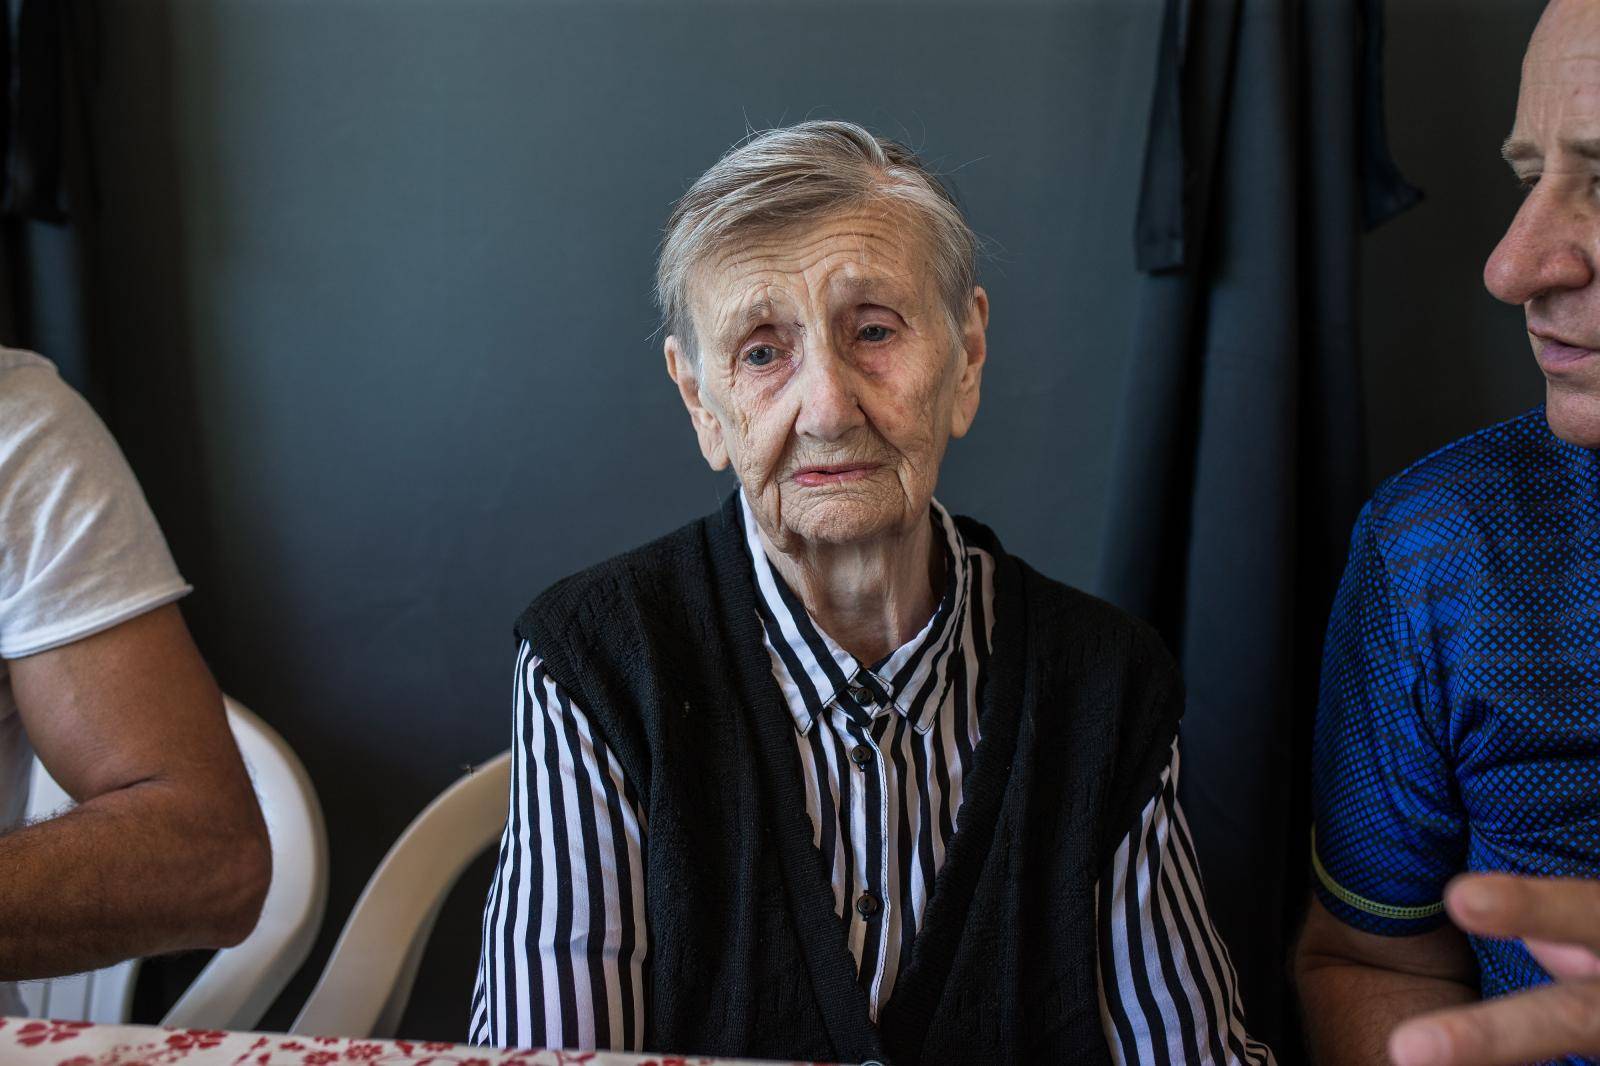 Eva i njenih 99 potomaka: 'Ona je htjela da svi dođemo na njen 90. rođendan - i većina nas je!'